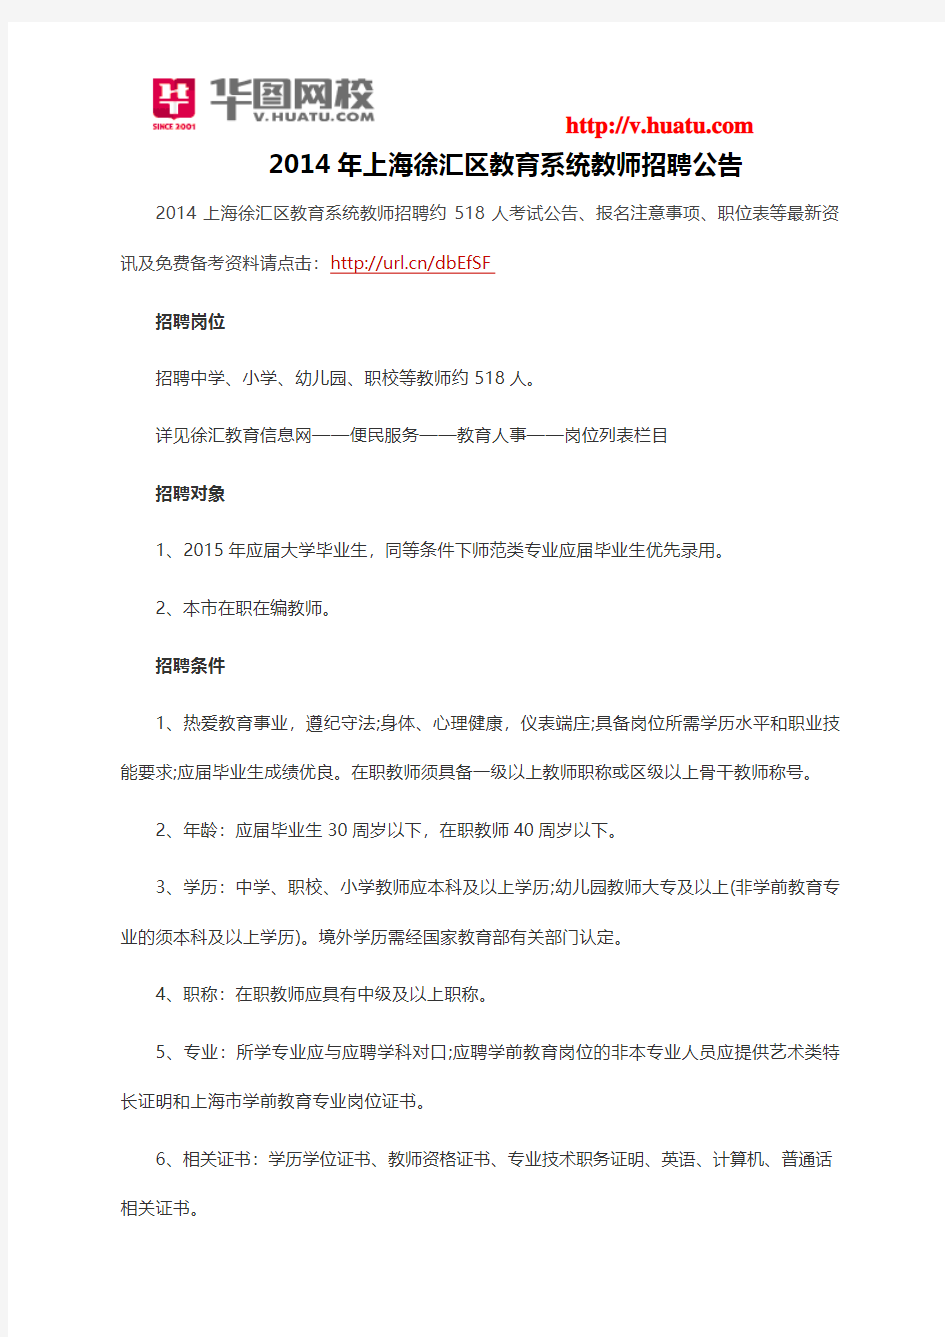 2014年上海徐汇区教育系统教师招聘公告